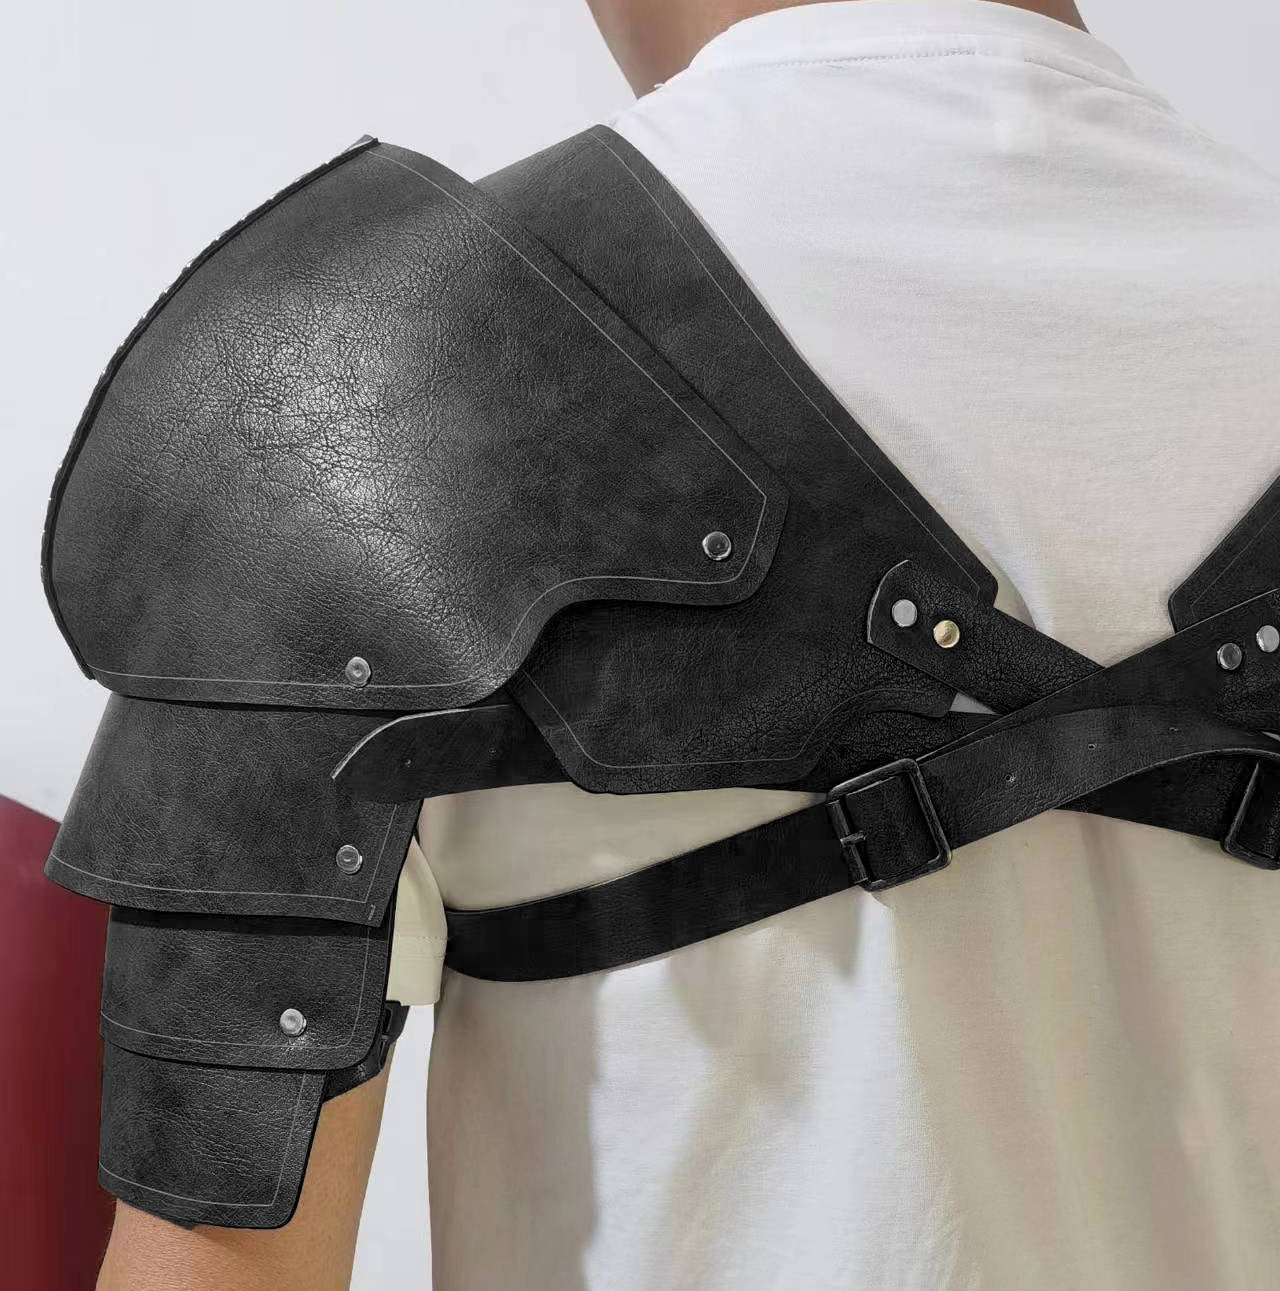 New retro medieval samurai leather double shoulder vest shoulder protection COS photography prop